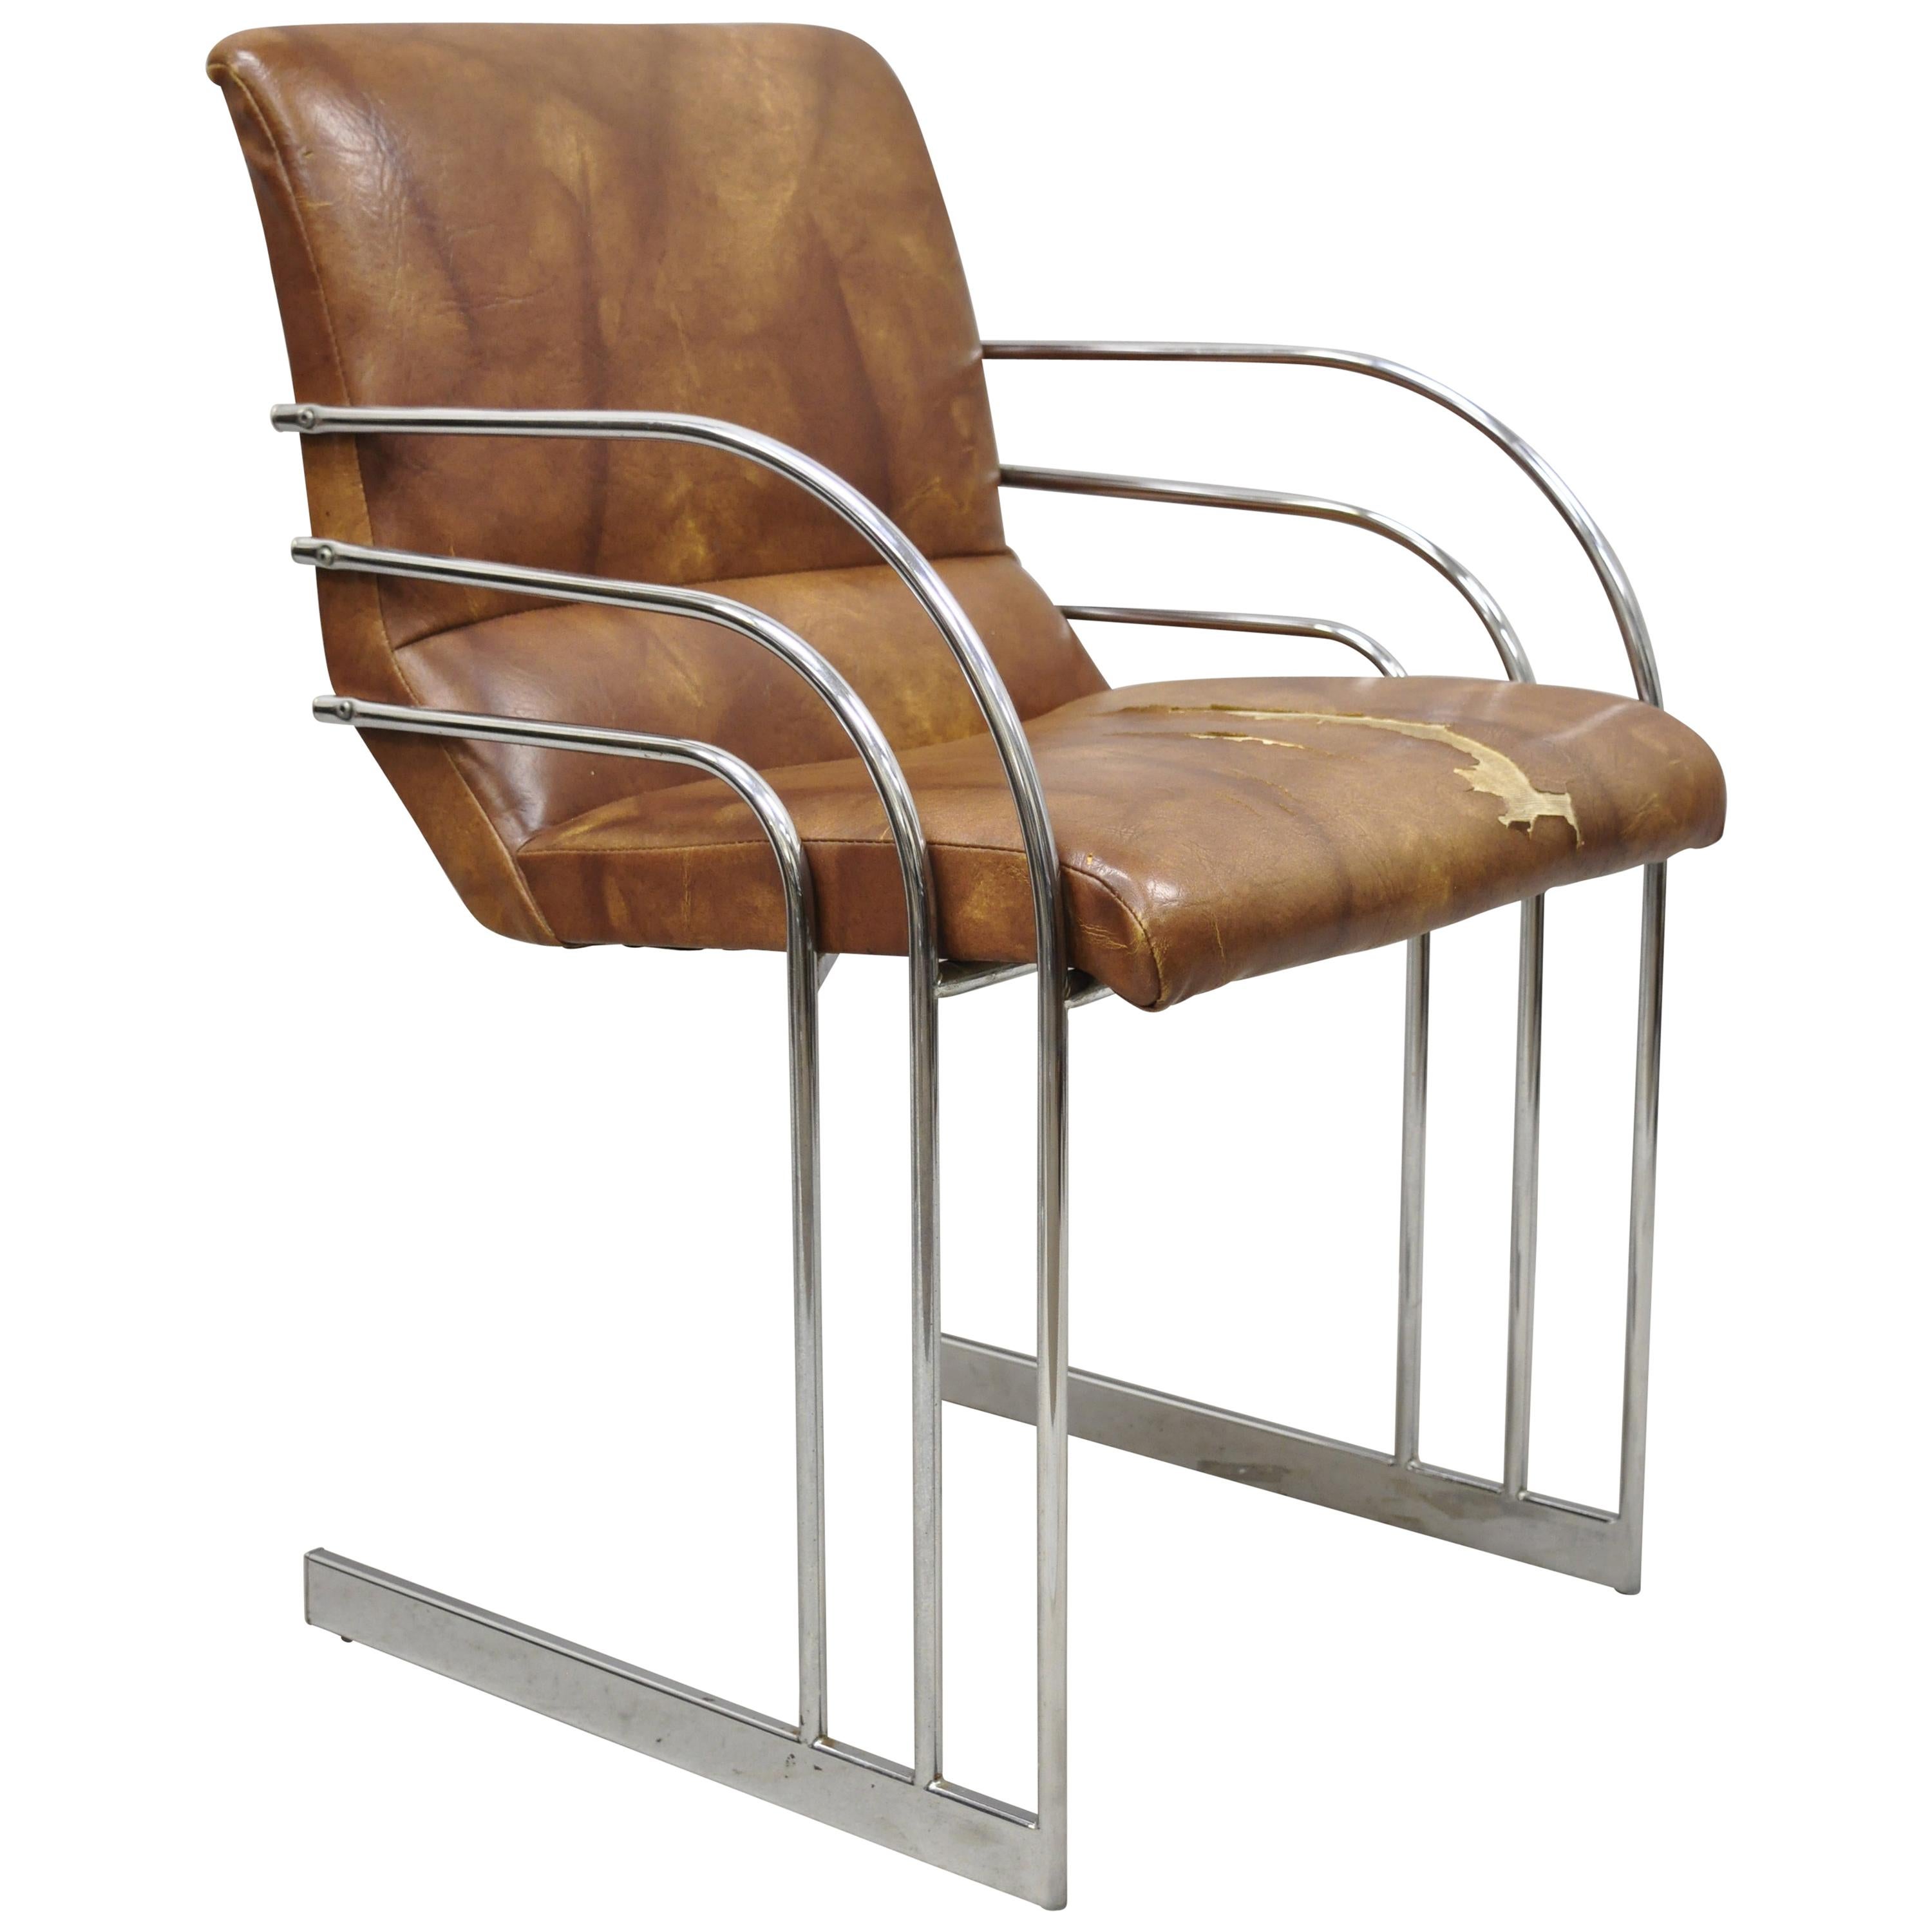 Freitragender Milo Baughman-Sessel im Art-déco-Stil aus Chrom, Mid-Century Modern